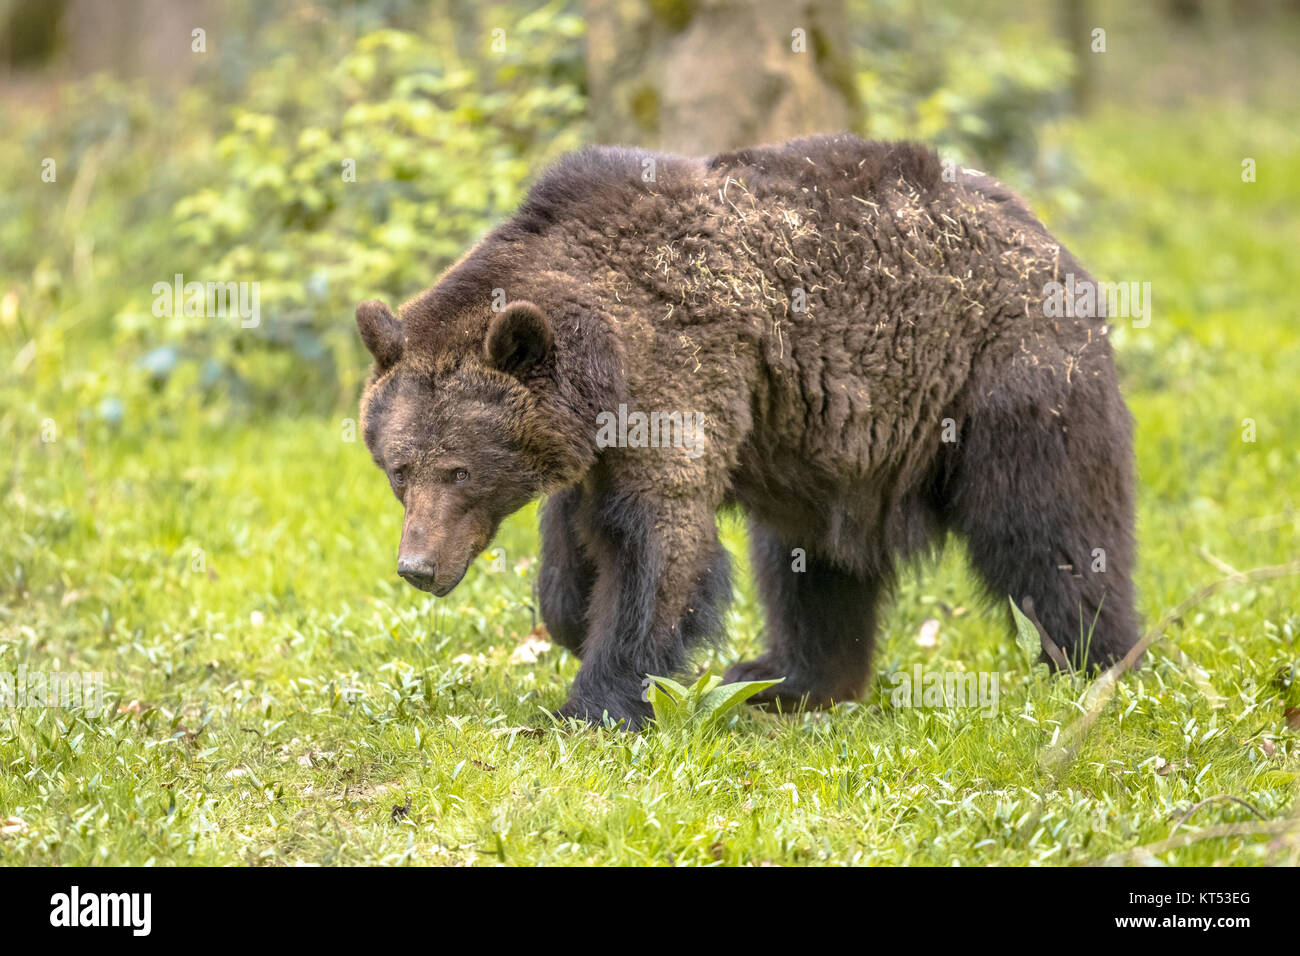 Unione orso bruno ((Ursus arctos) rovistando nella foresta di habitat. Questo è il più diffuso orso e si trova in gran parte del nord Eurasia Foto Stock